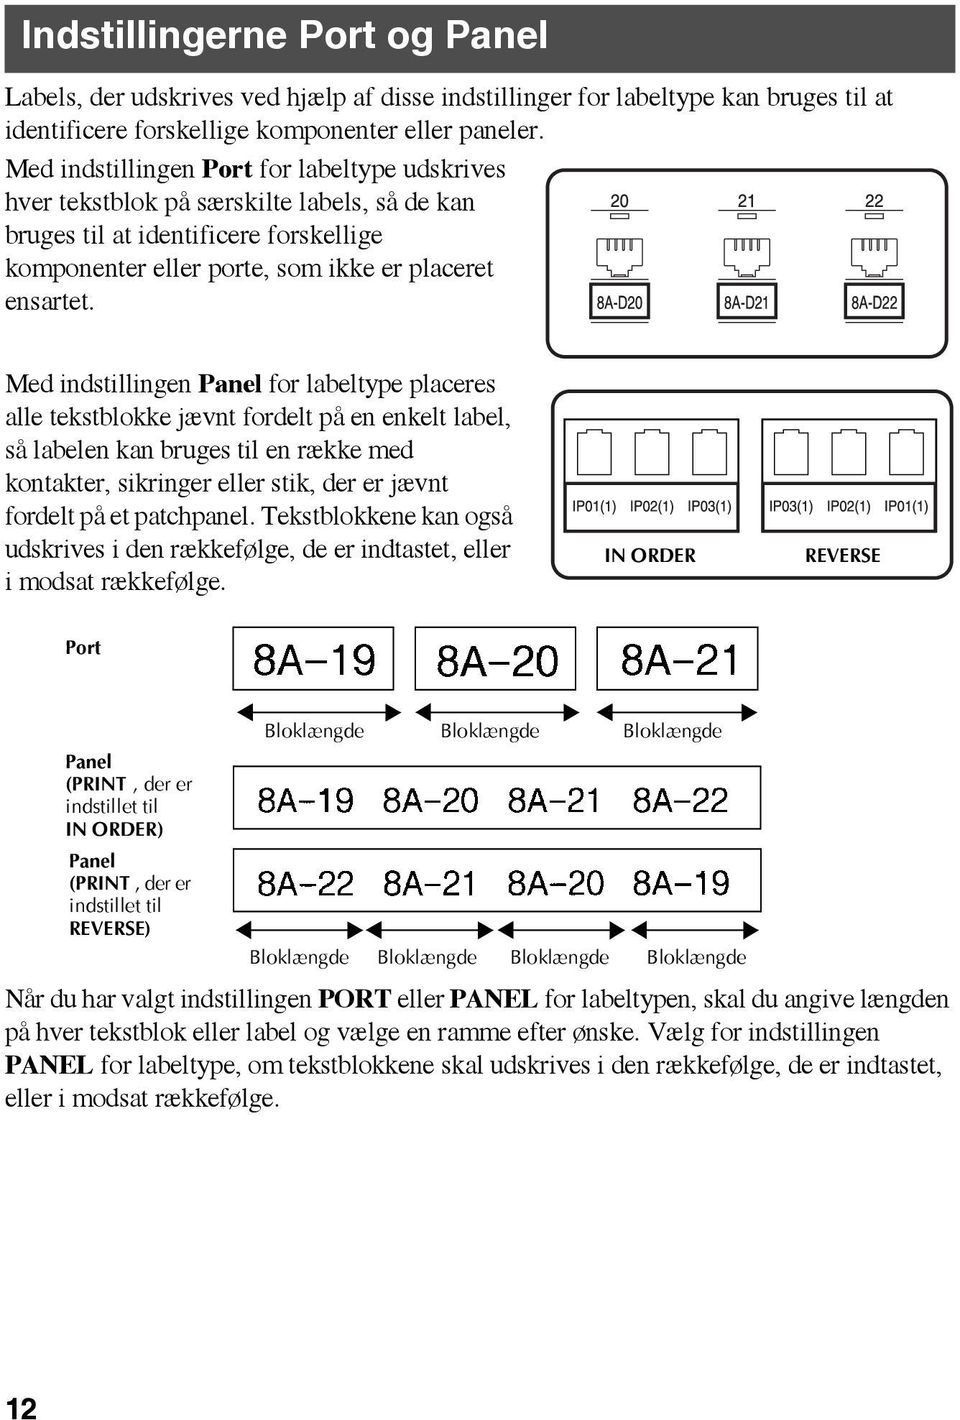 Med indstillingen Panel for labeltype placeres alle tekstblokke jævnt fordelt på en enkelt label, så labelen kan bruges til en række med kontakter, sikringer eller stik, der er jævnt fordelt på et